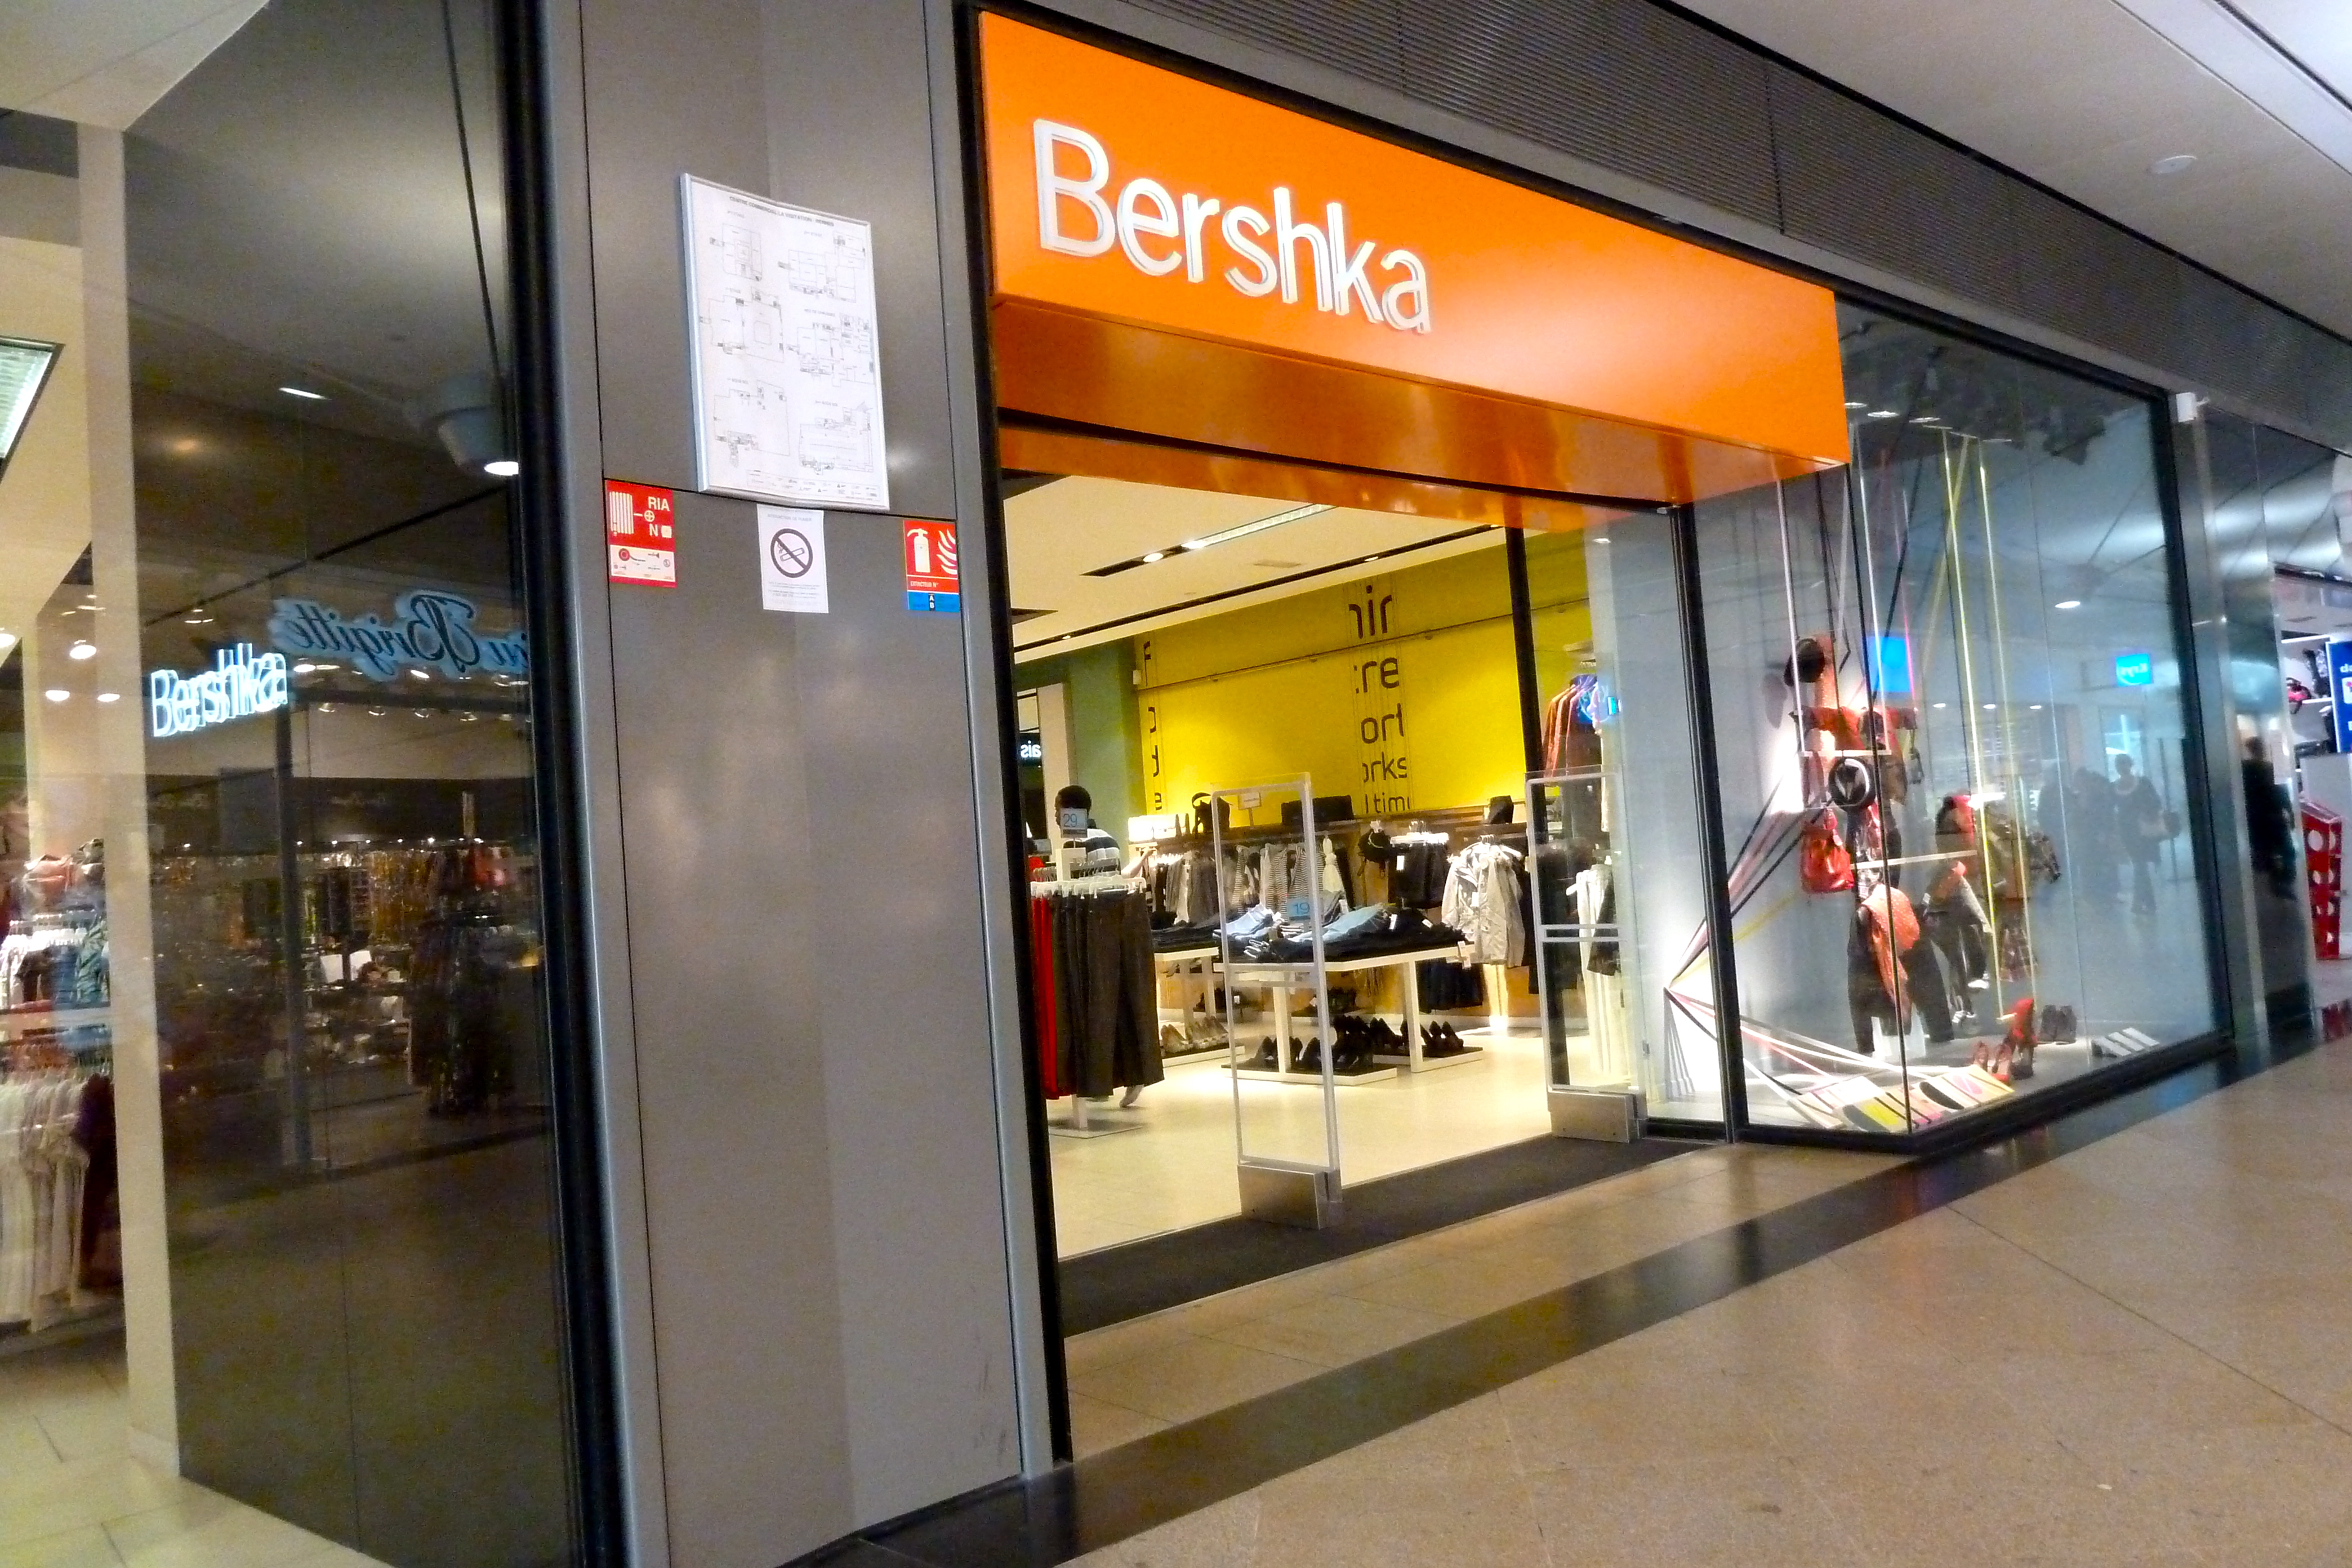 Arriba 68+ imagen de donde es la marca de ropa bershka